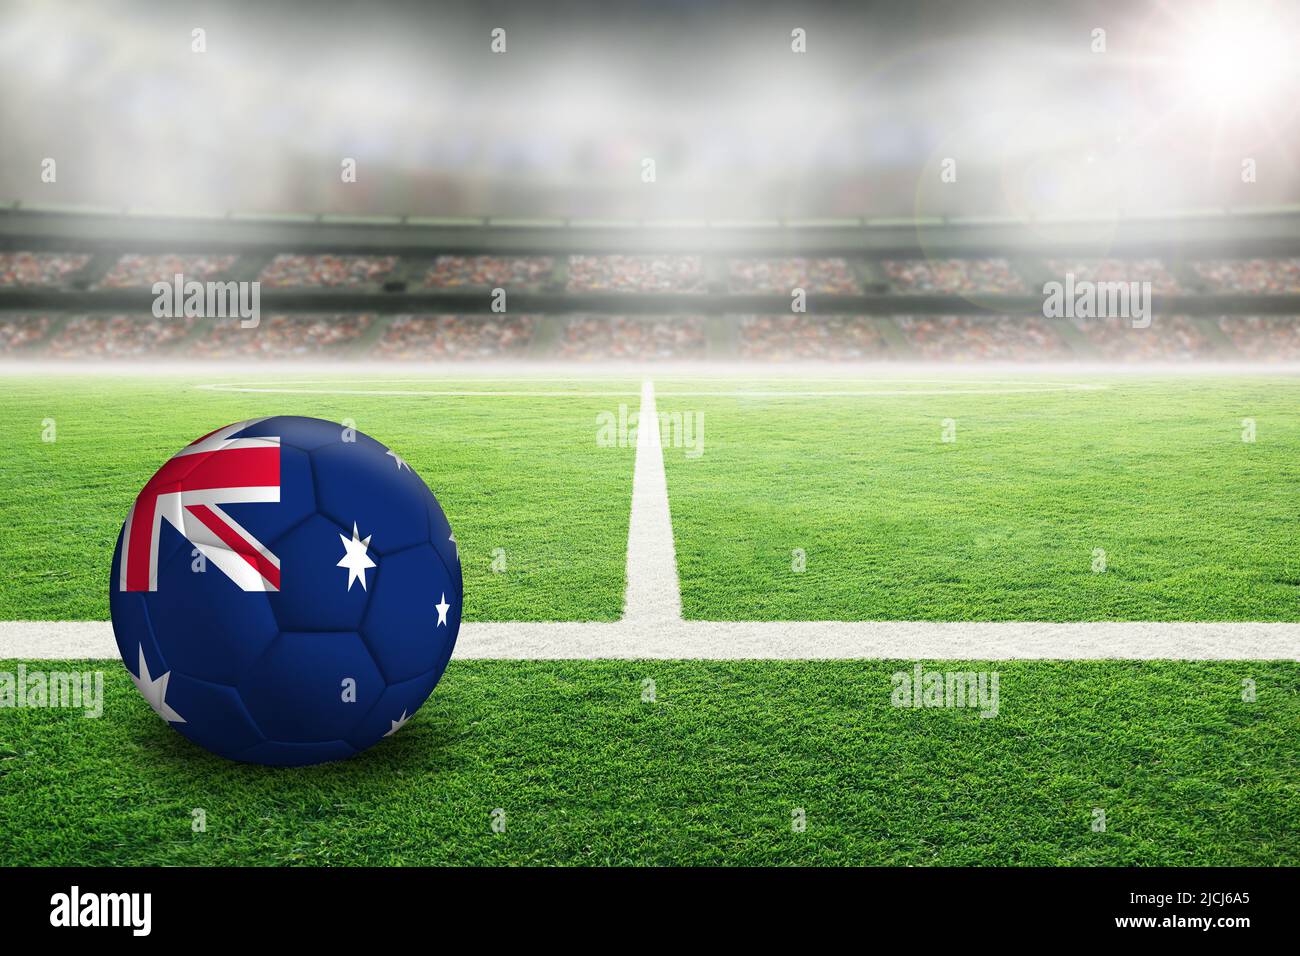 Fútbol australiano en un estadio al aire libre con mucha luz y bandera australiana pintada. Concéntrate en el primer plano y en el balón de fútbol con poca profundidad de campo en ba Foto de stock